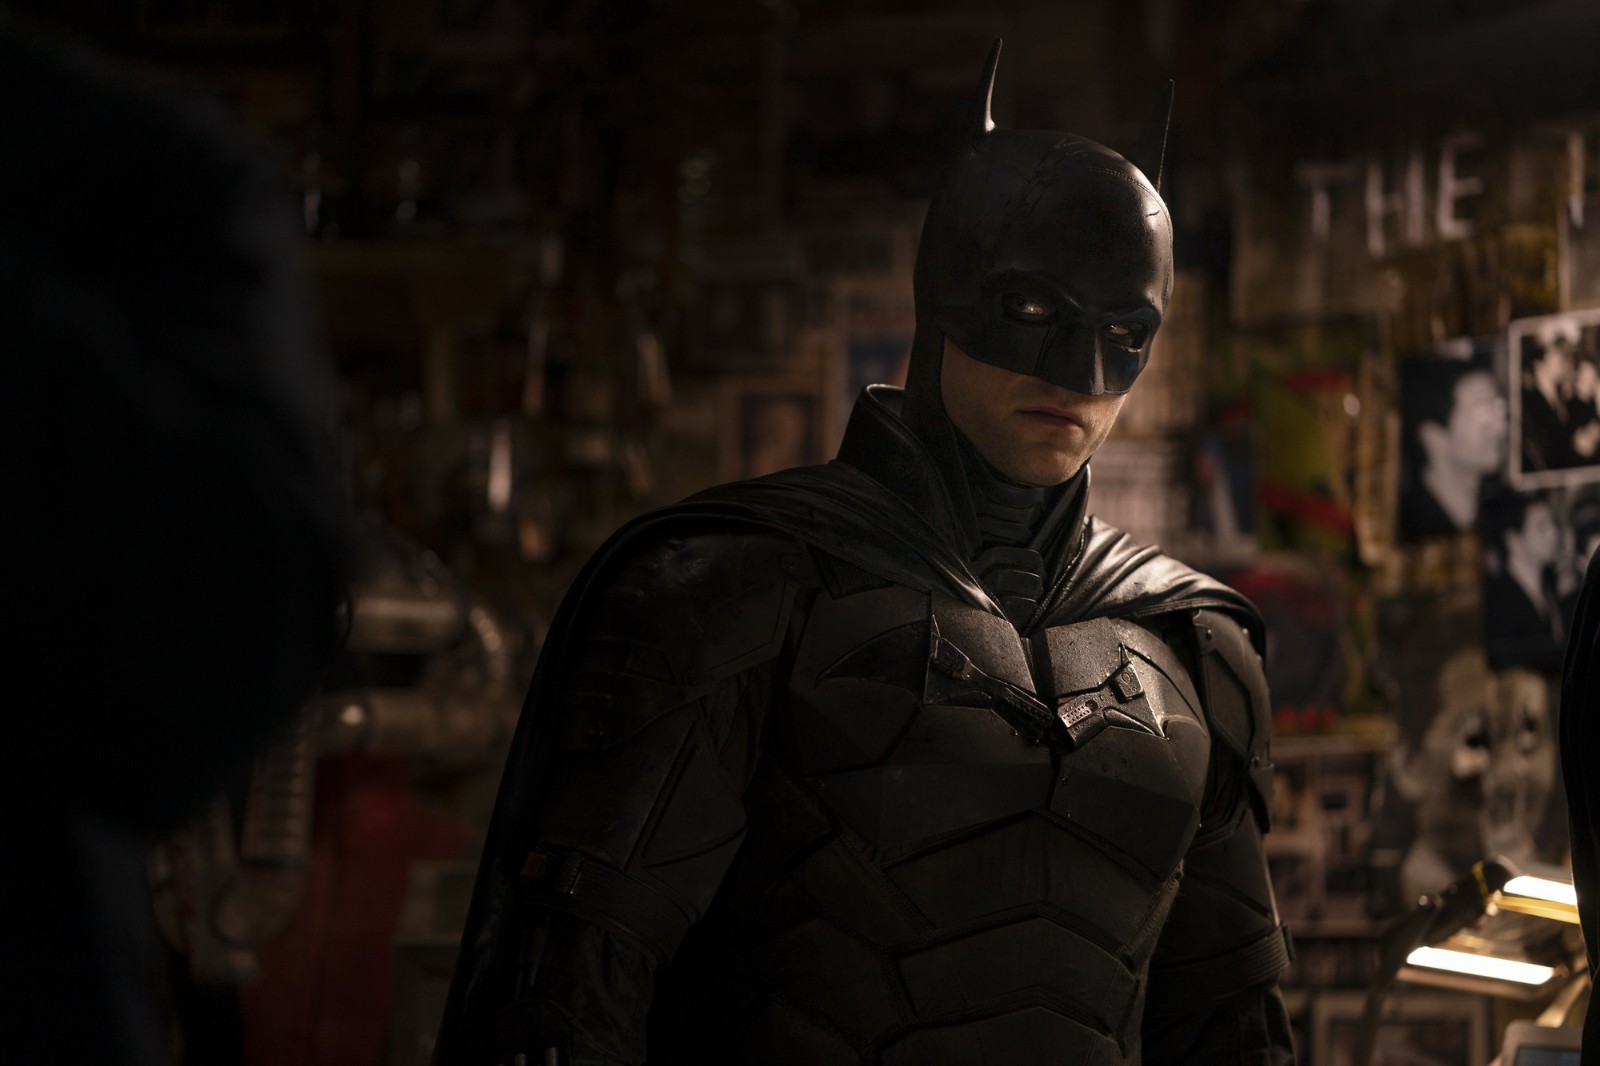 全新剧照:《新蝙蝠侠》将于3月4日在北美上映,3月18日在中国上映